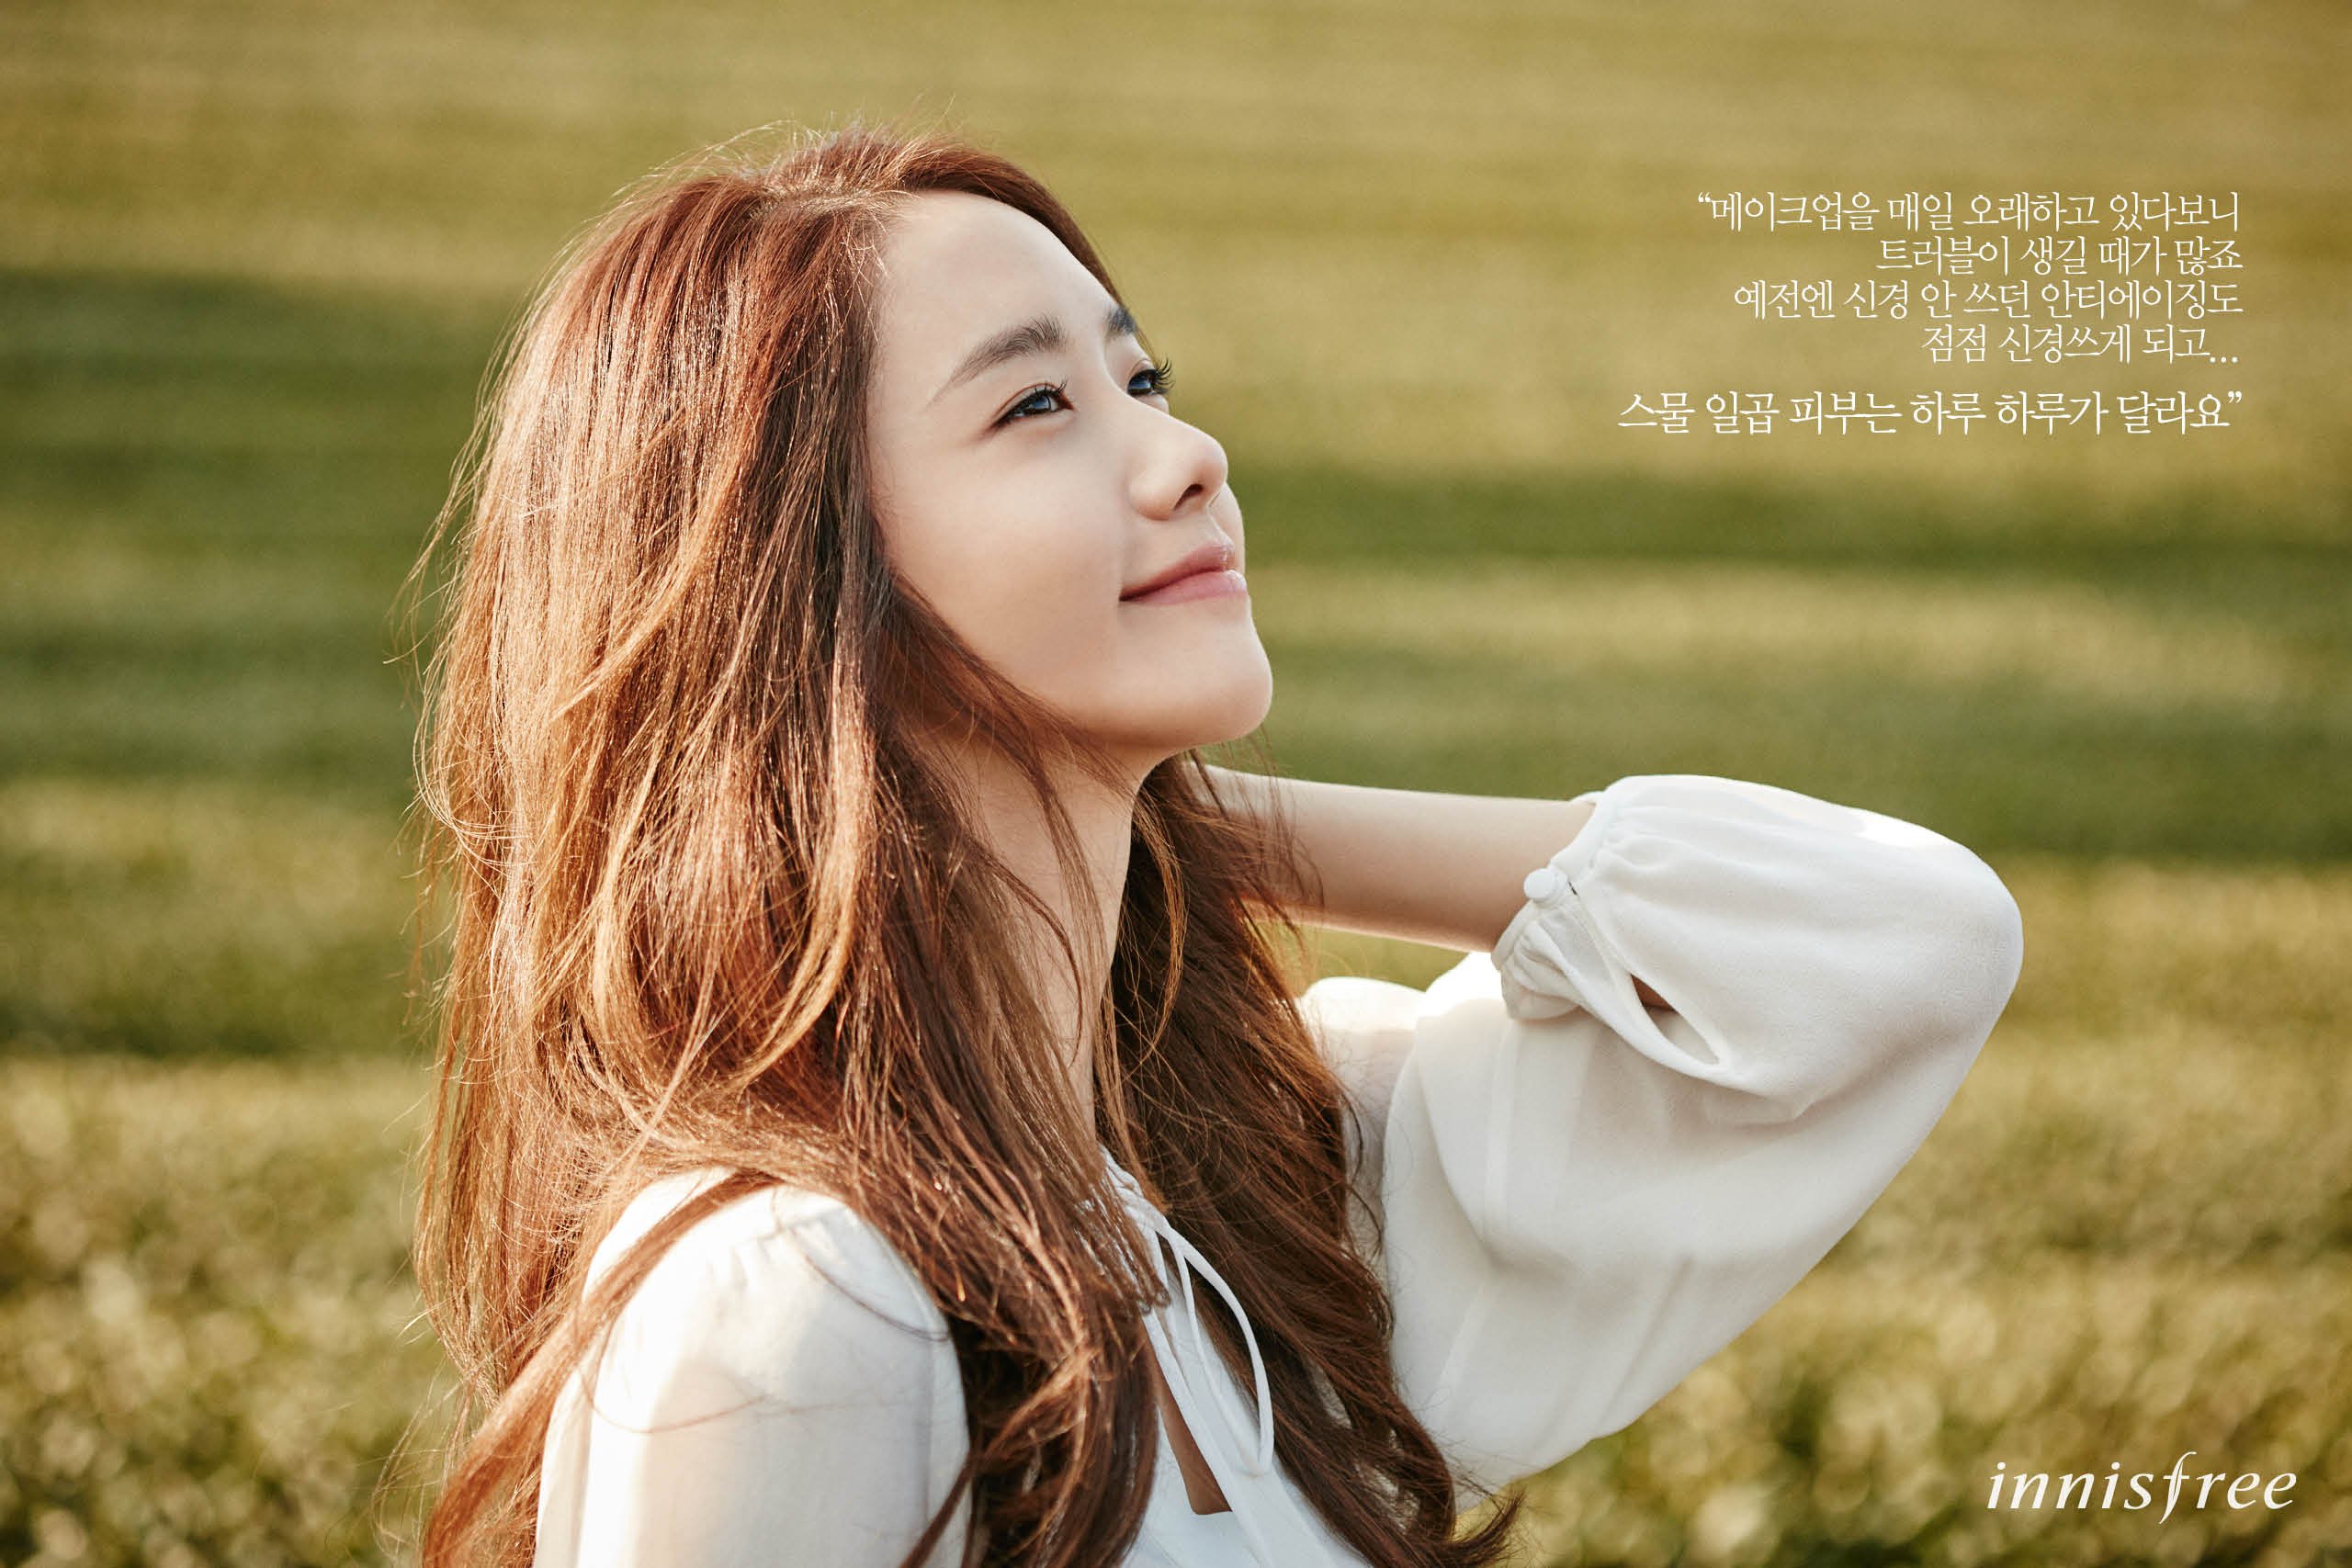 [OTHER][21-07-2012]Hình ảnh mới nhất từ thương hiệu "Innisfree" của YoonA - Page 14 61Q6g3O0yU-3000x3000